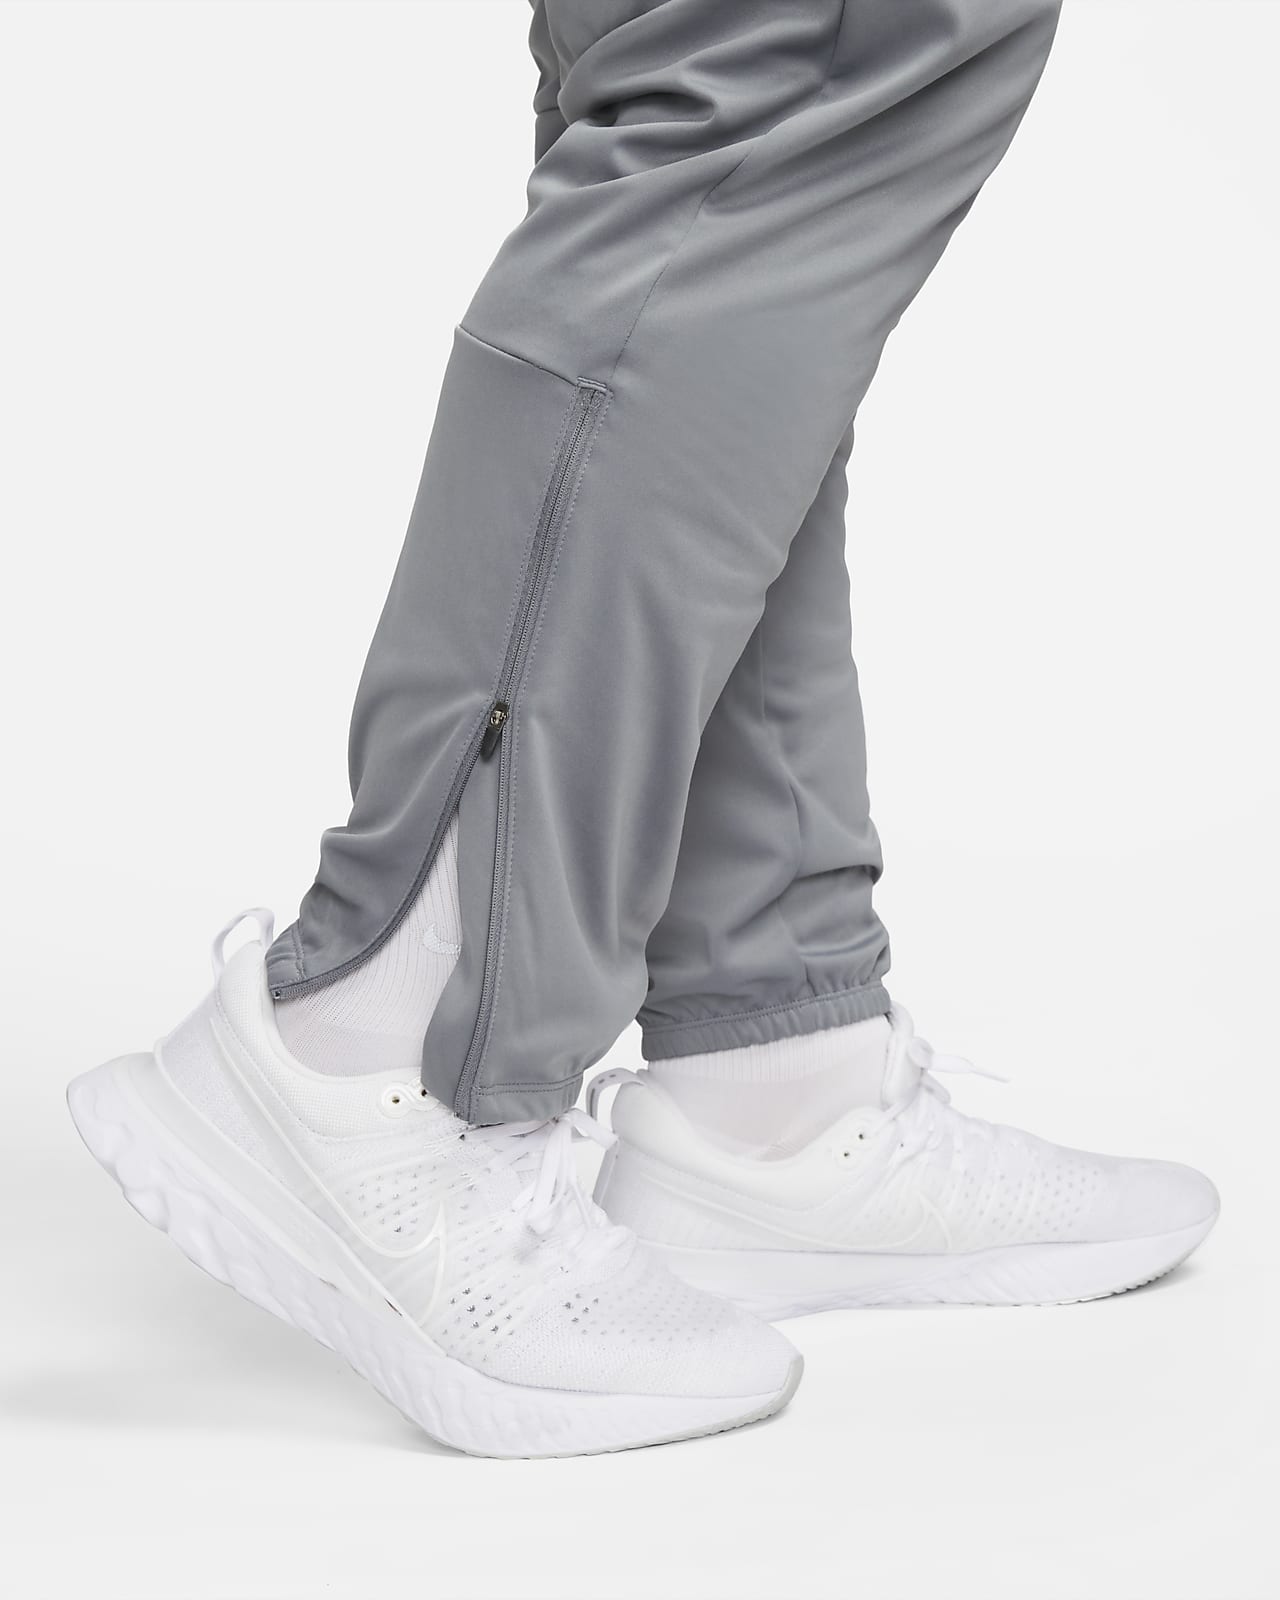 Pantalons de Running pour Homme. Nike CA